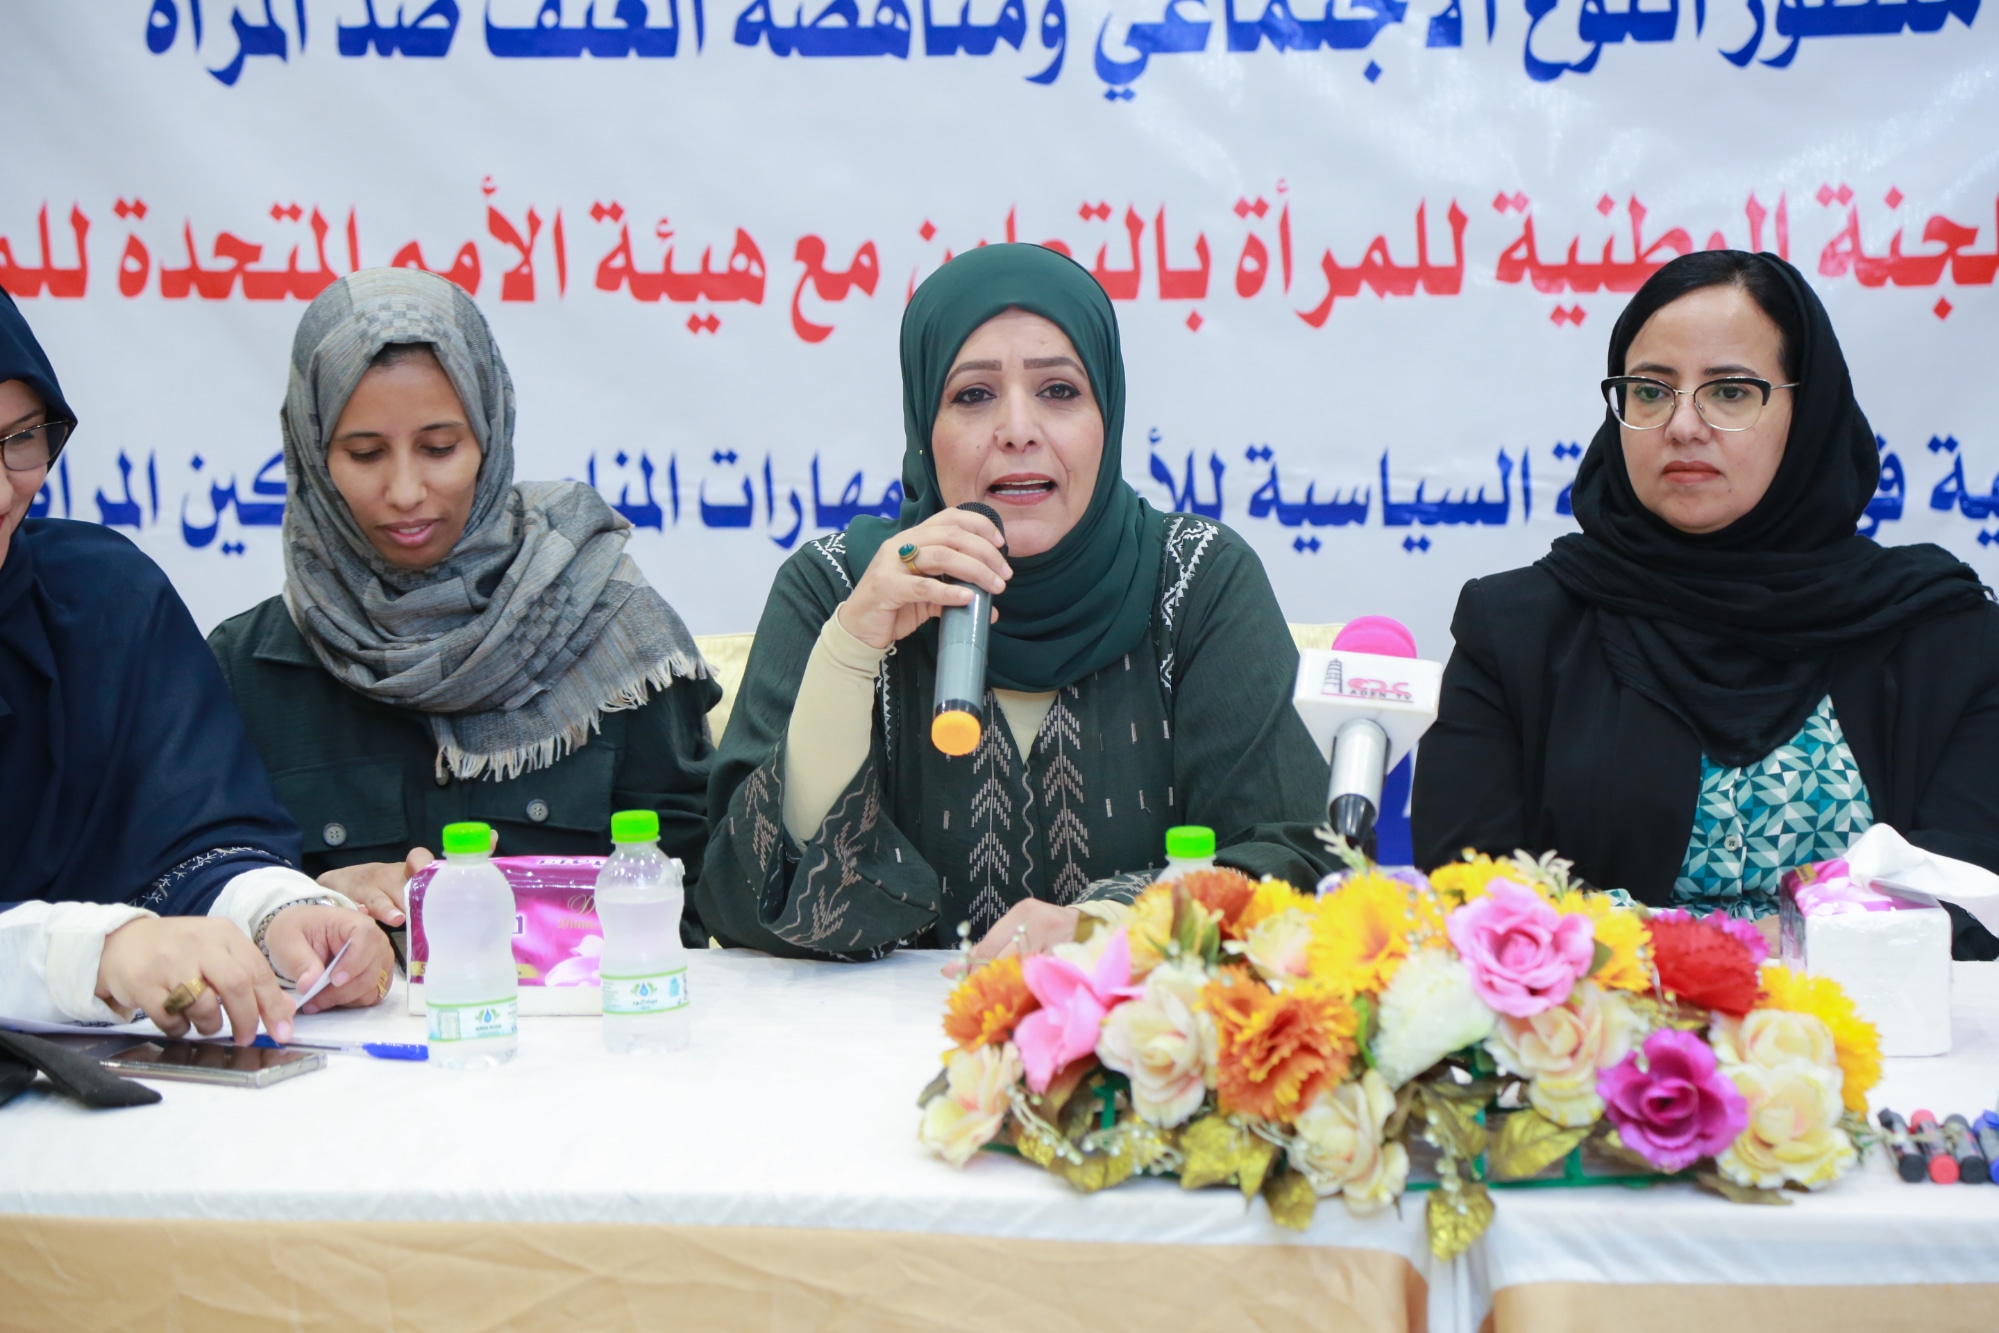 اللجنة الوطنية للمرأة تقيم دورة تدريبية للنساء الحزبيات حول تعزيز التمكين السياسي للمرأة.